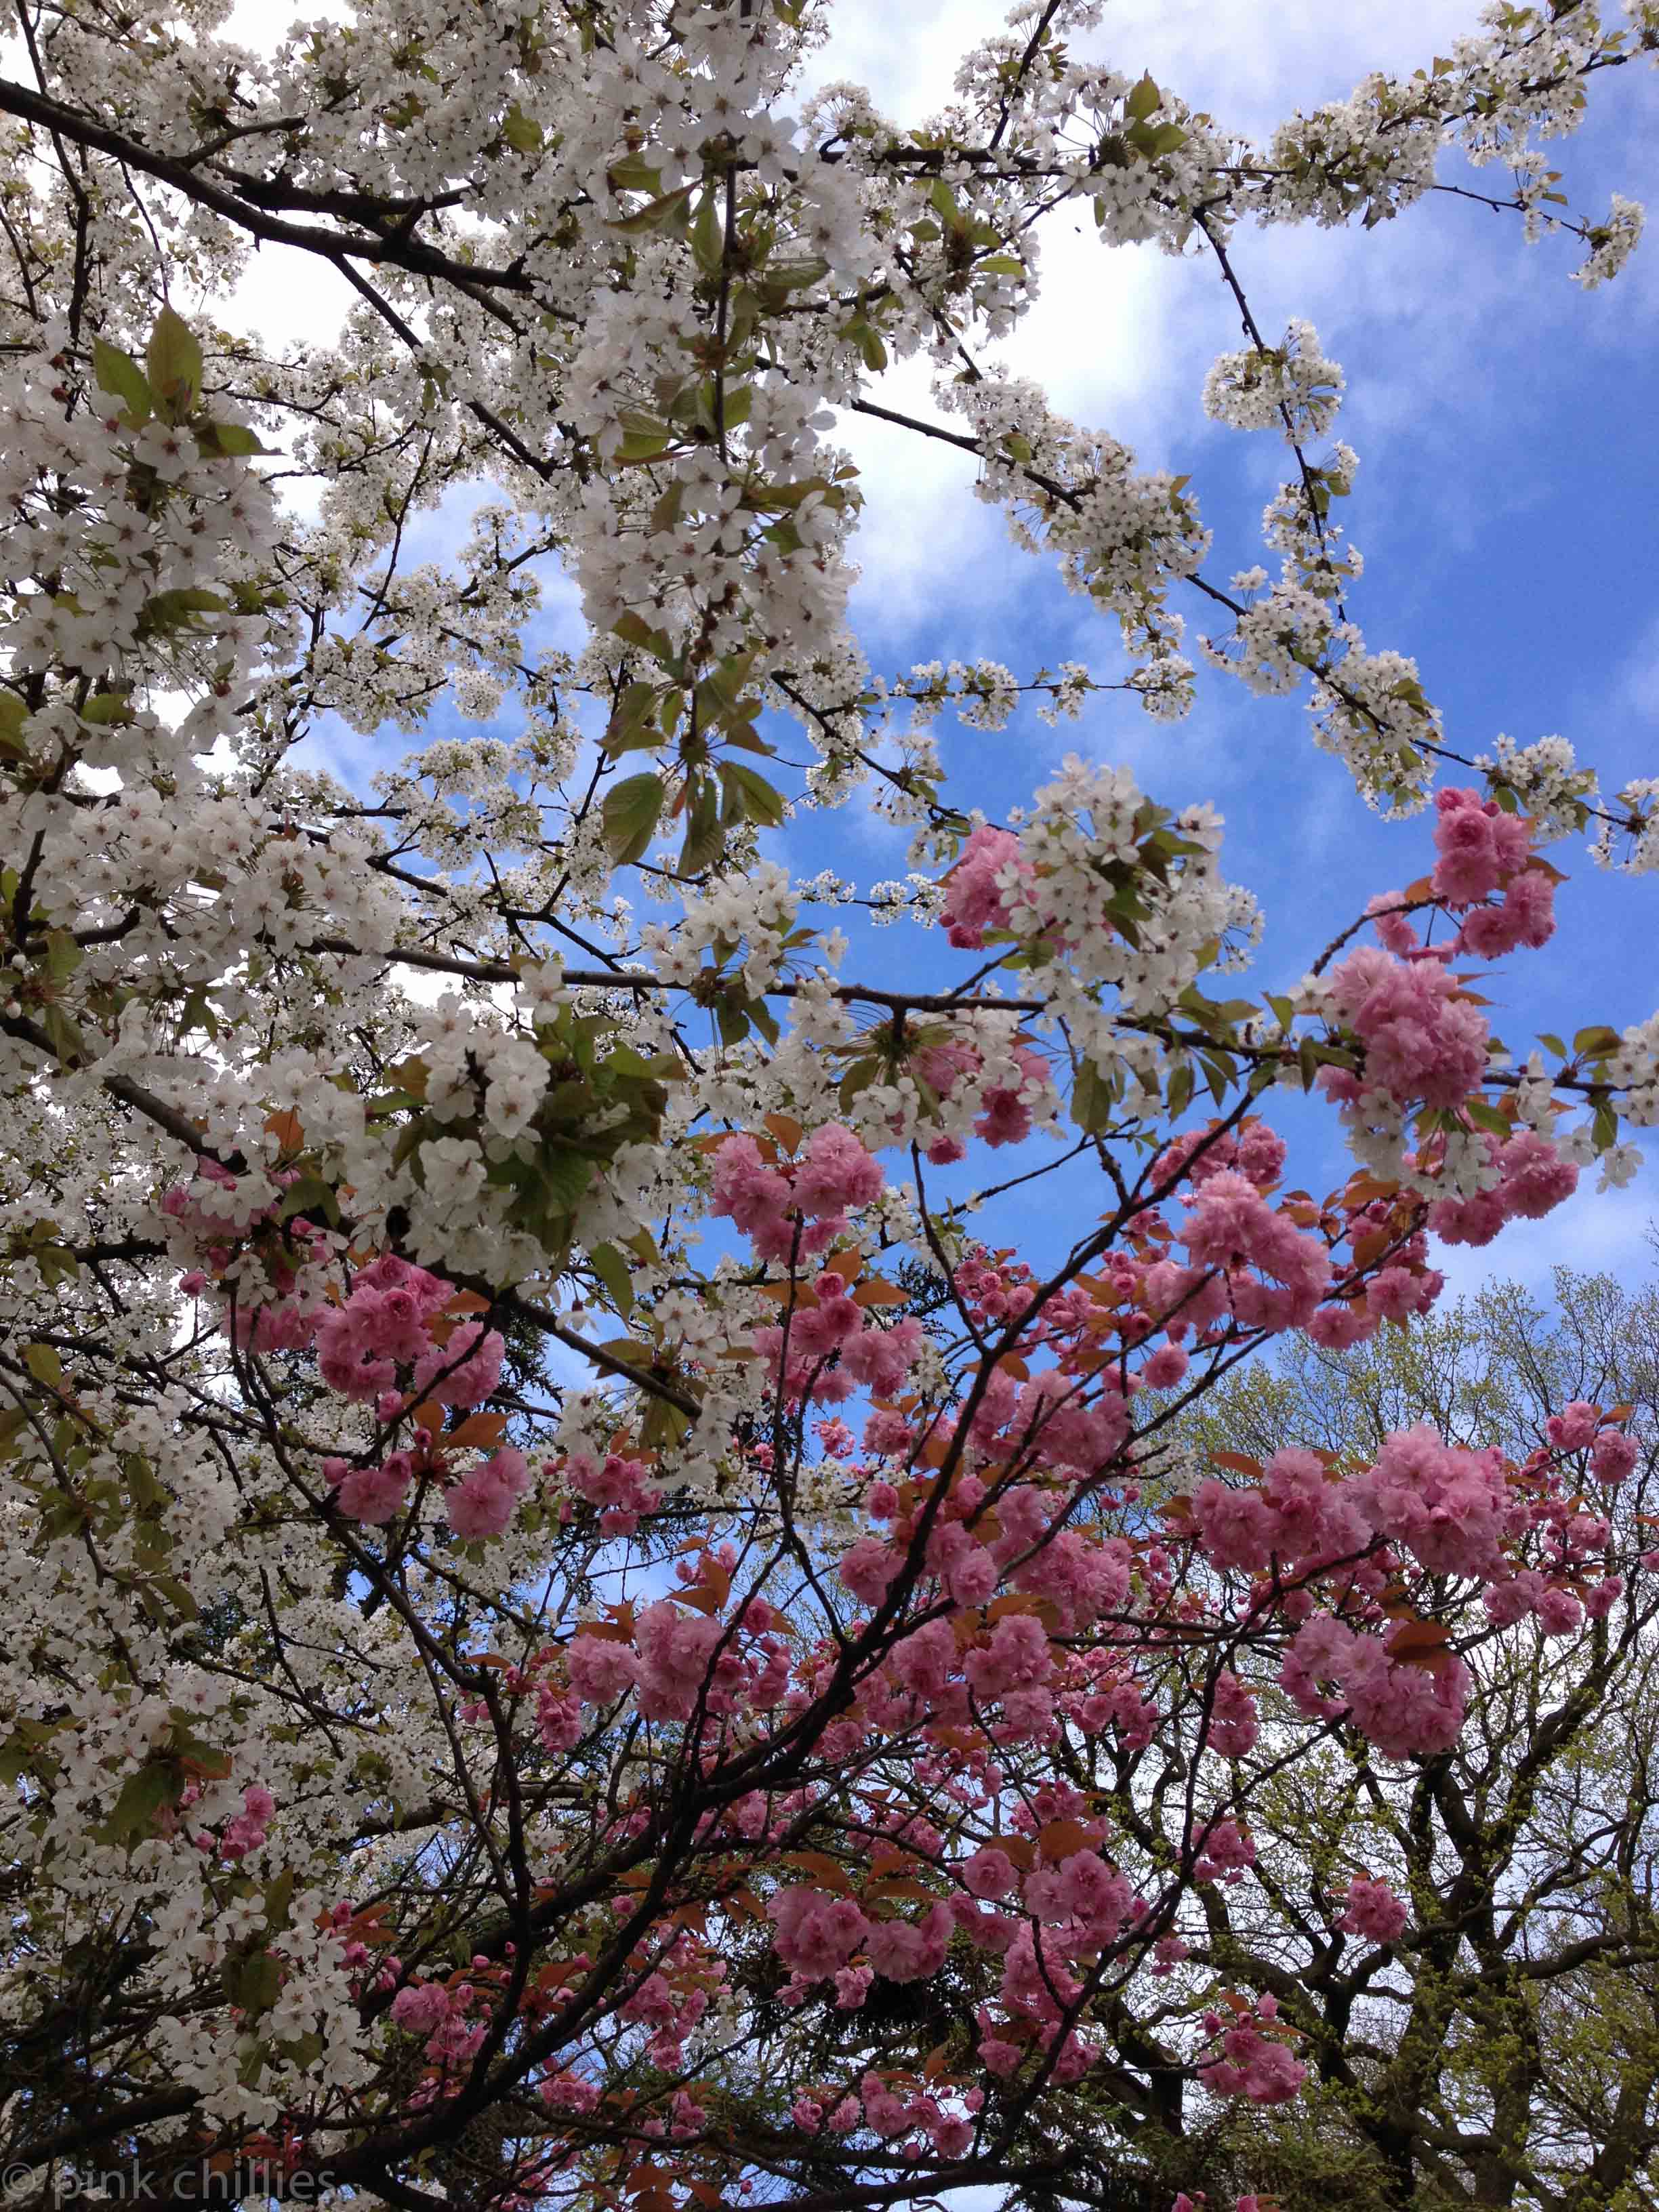 rosa und weiße Blüten an einem Baum